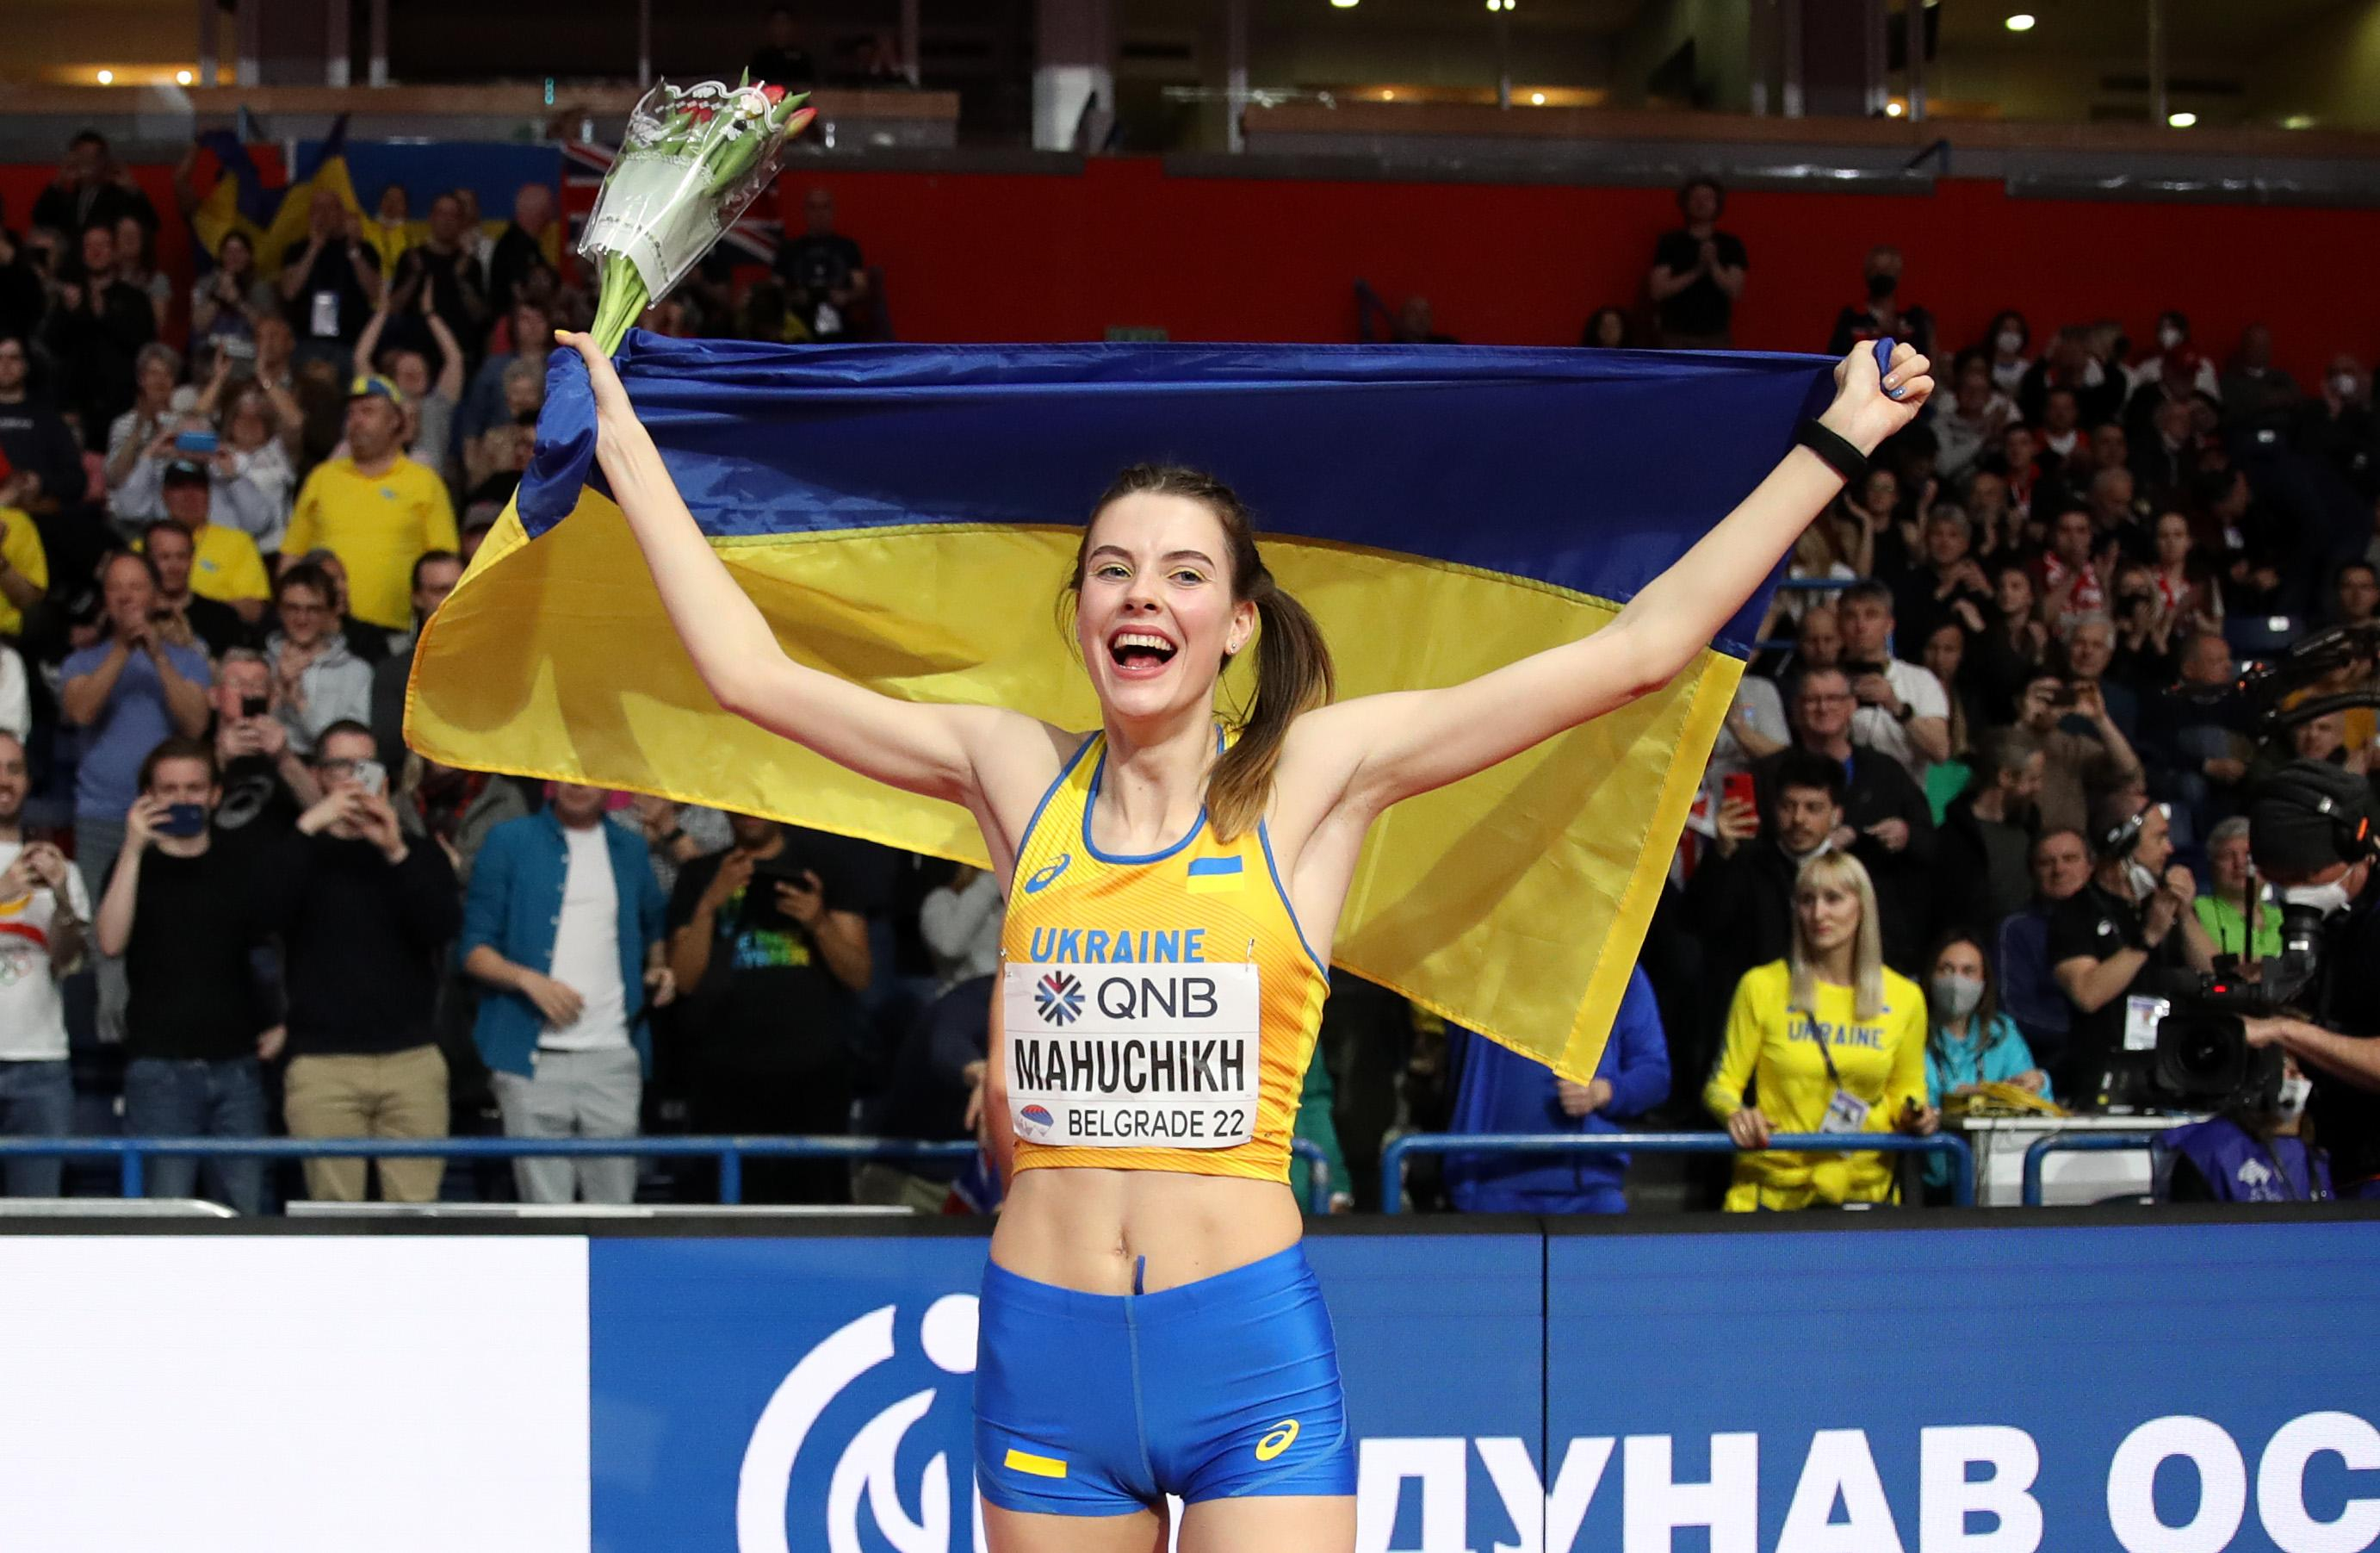 Ярослава Магучіх стала чемпіонкою світу зі стрибків у висоту в приміщенні - 24 канал Спорт